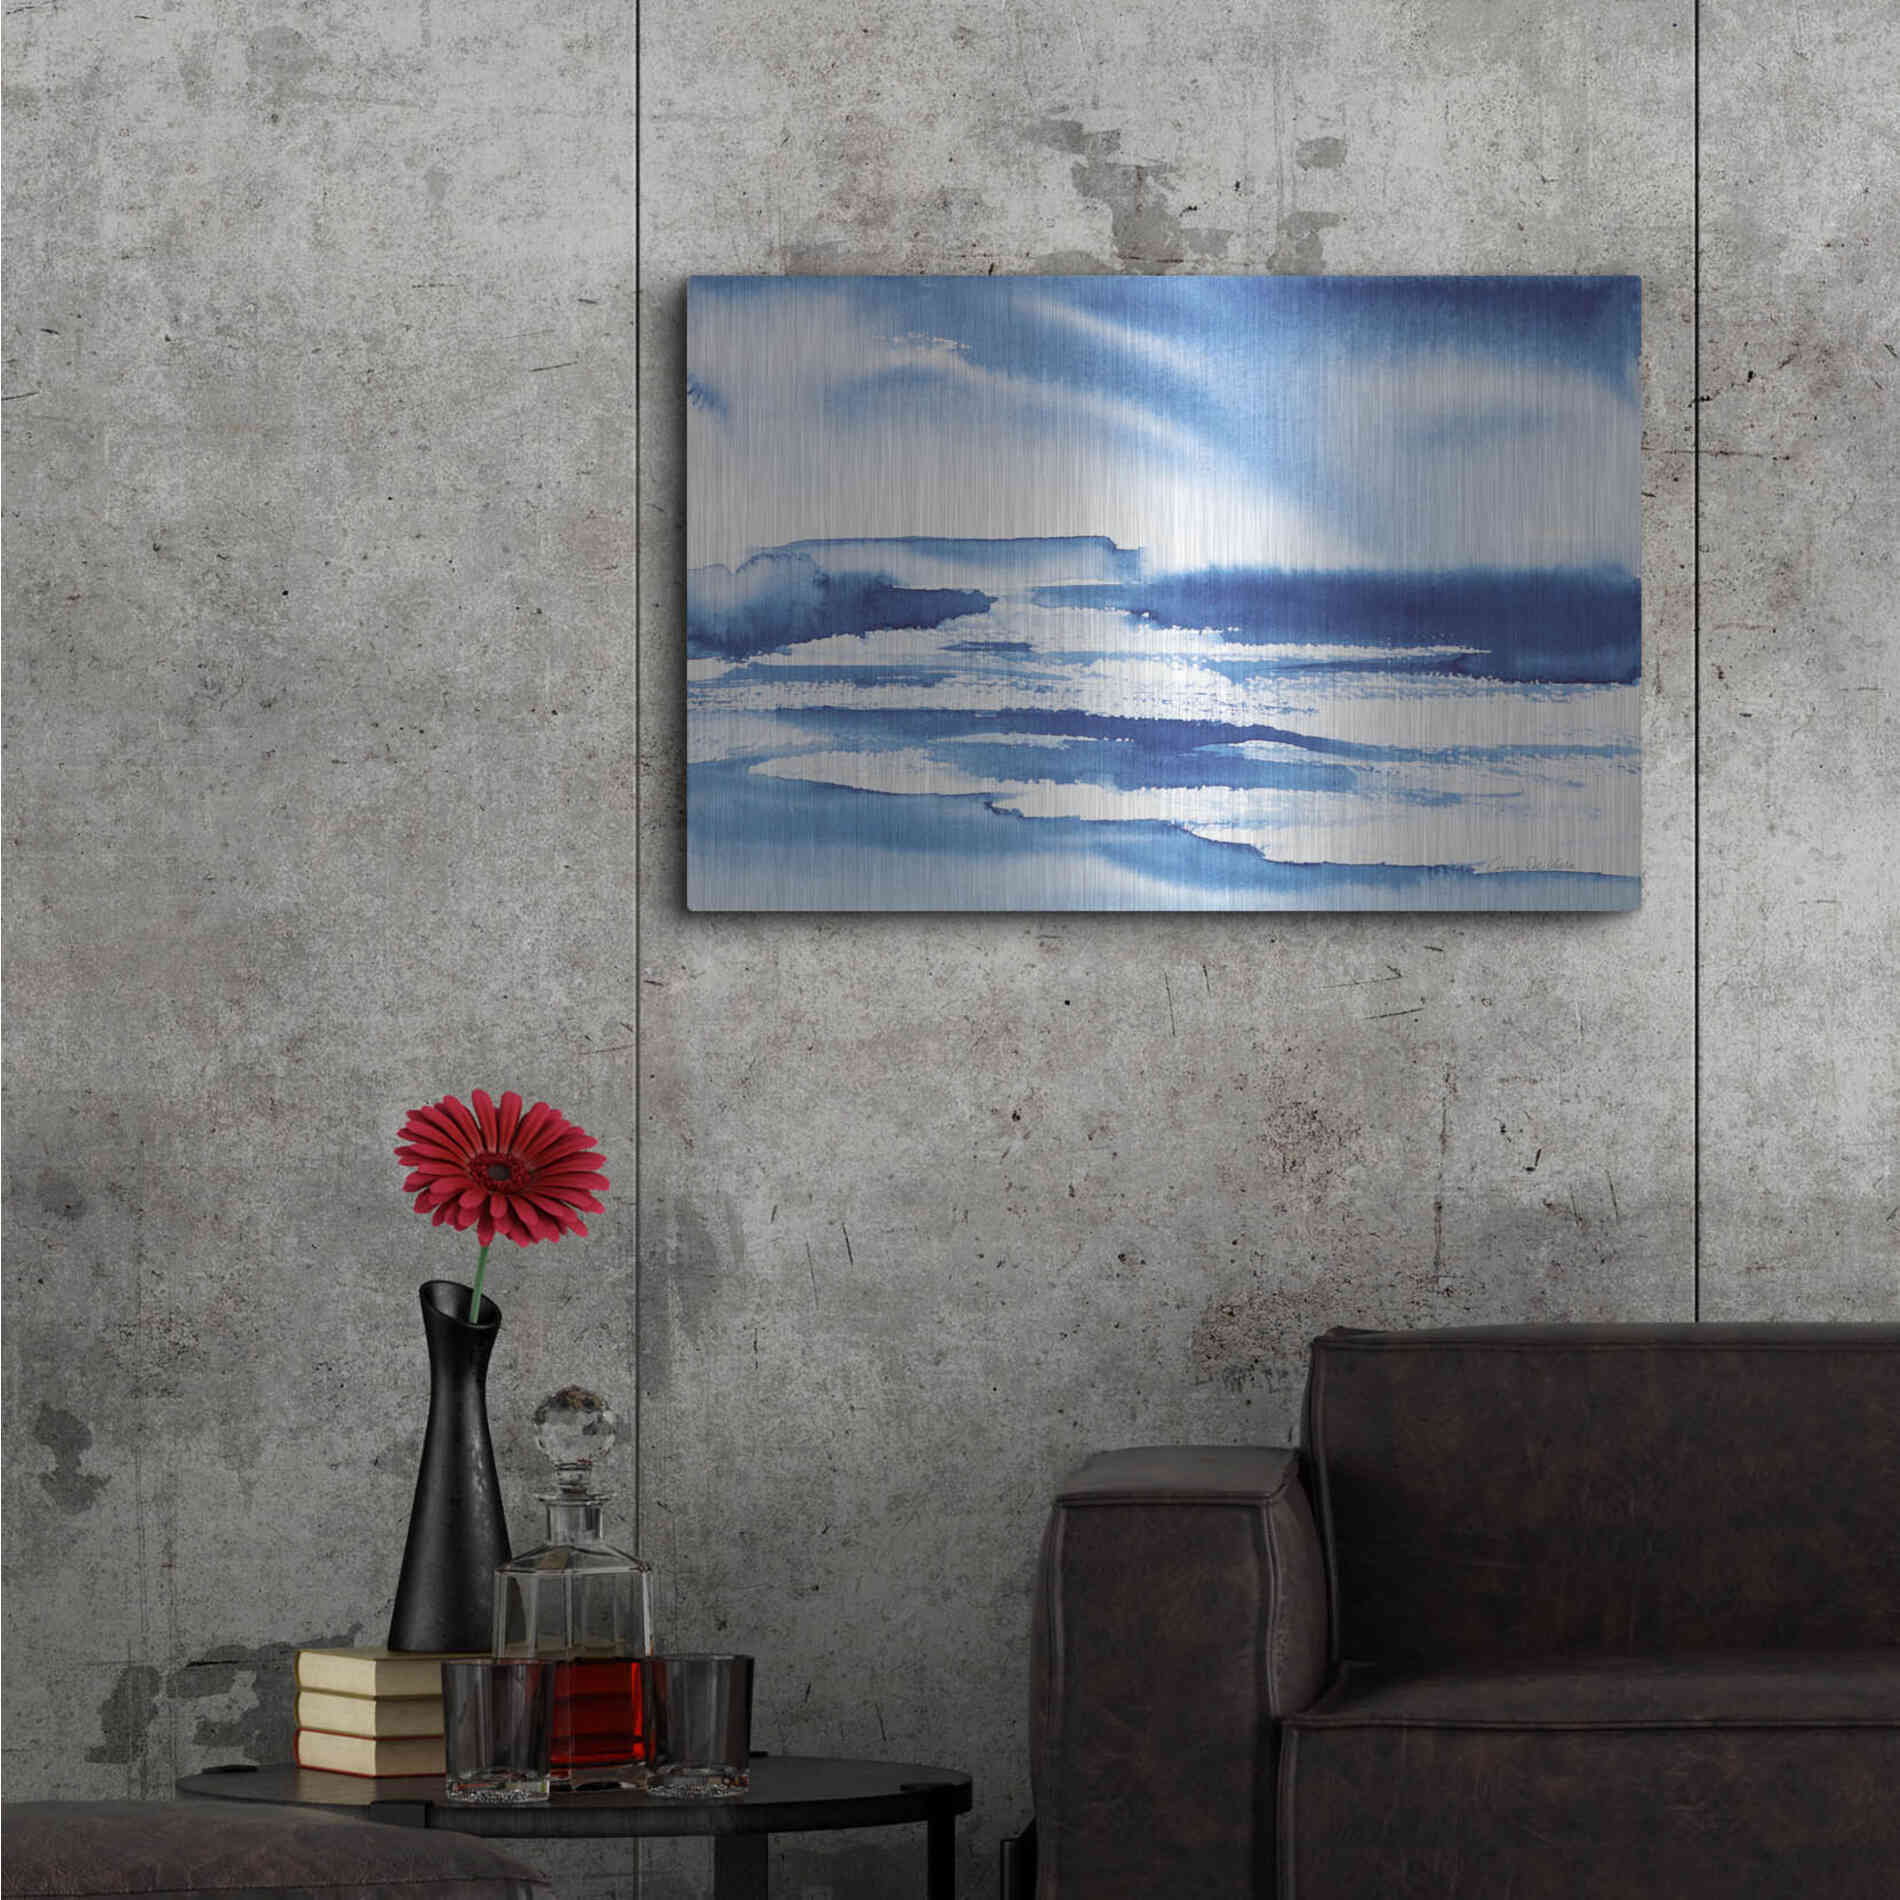 Luxe Metal Art 'Ocean Blue I' by Alan Majchrowicz, Metal Wall Art,36x24